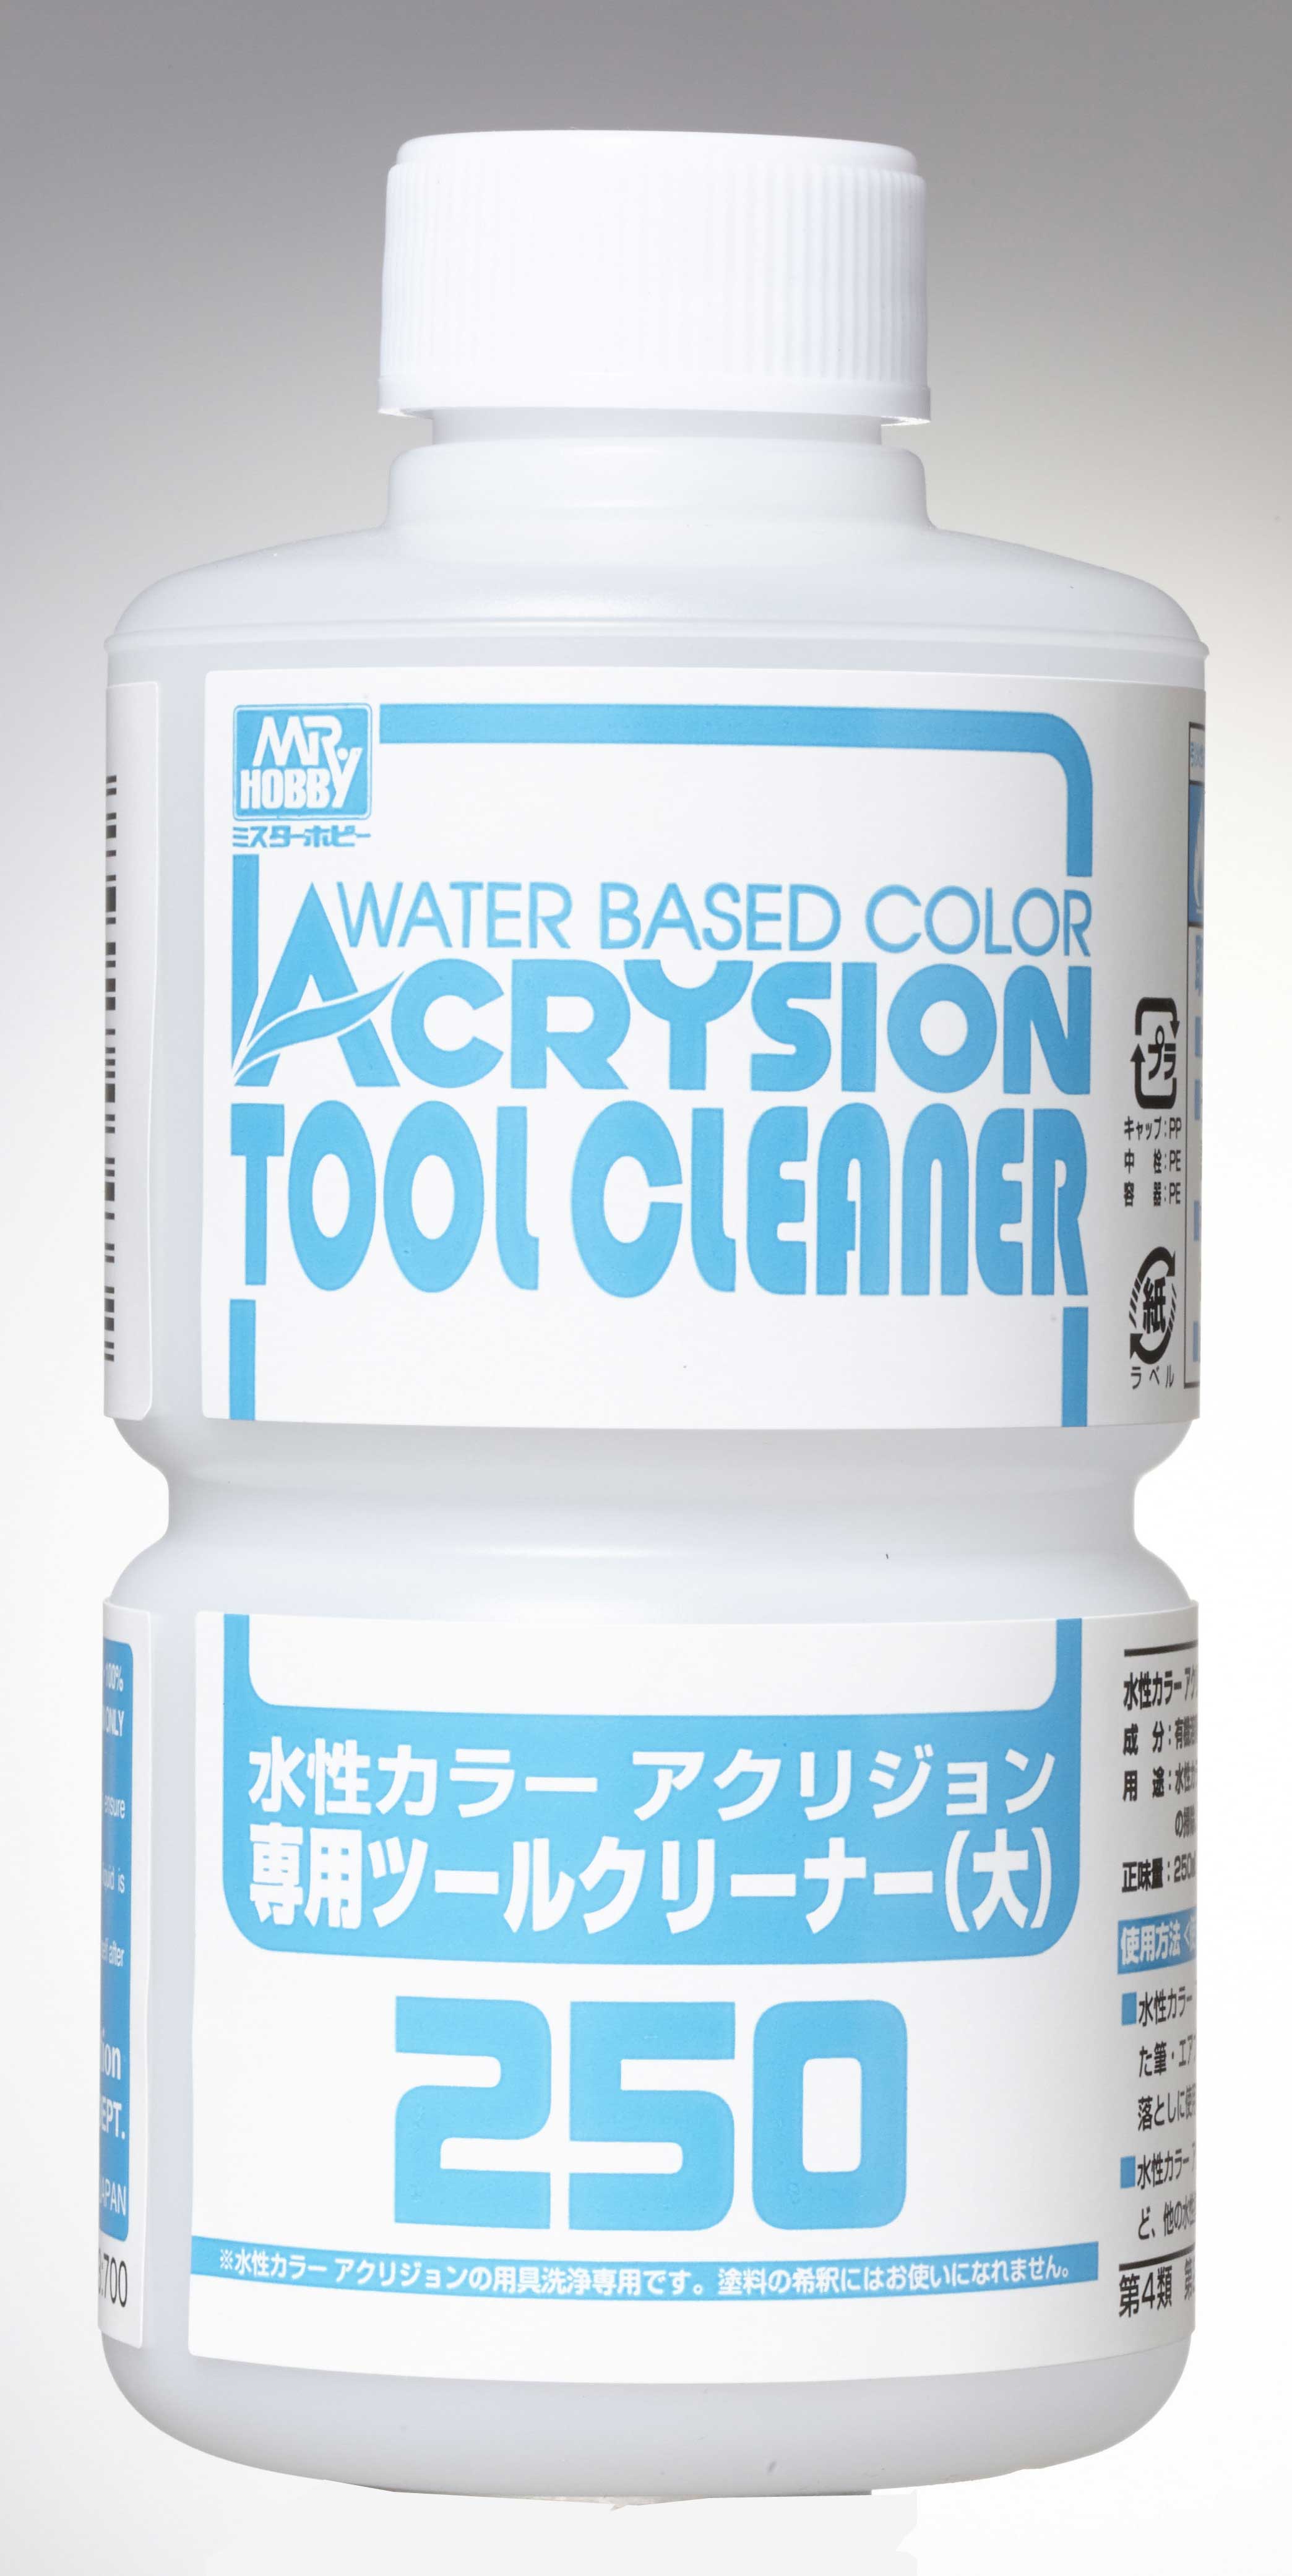 アクリジョン専用ツールクリーナー | アクリジョン | 塗料・うすめ液 